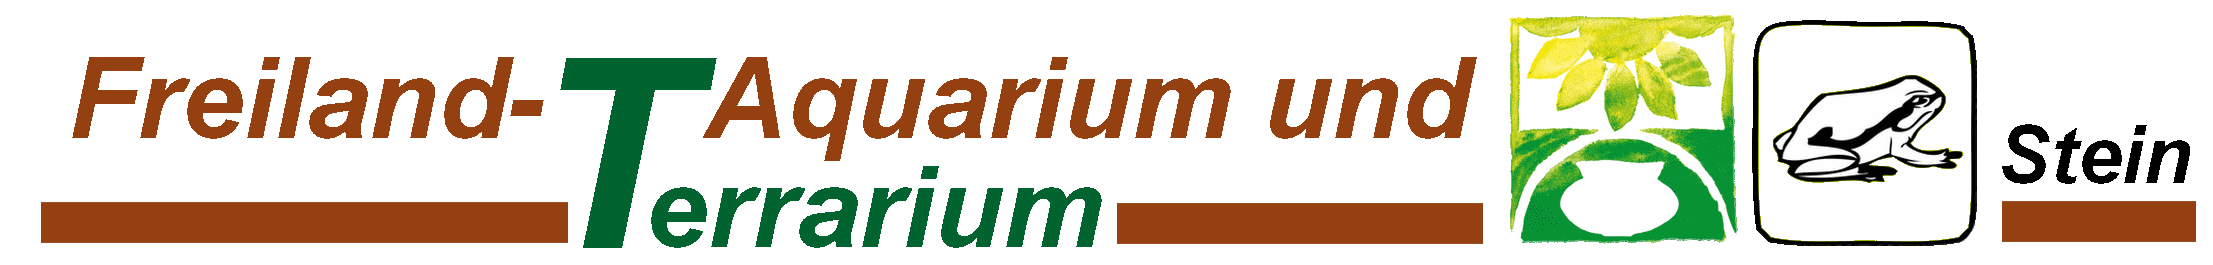 Freiland-Aquarium und -Terrarium Stein